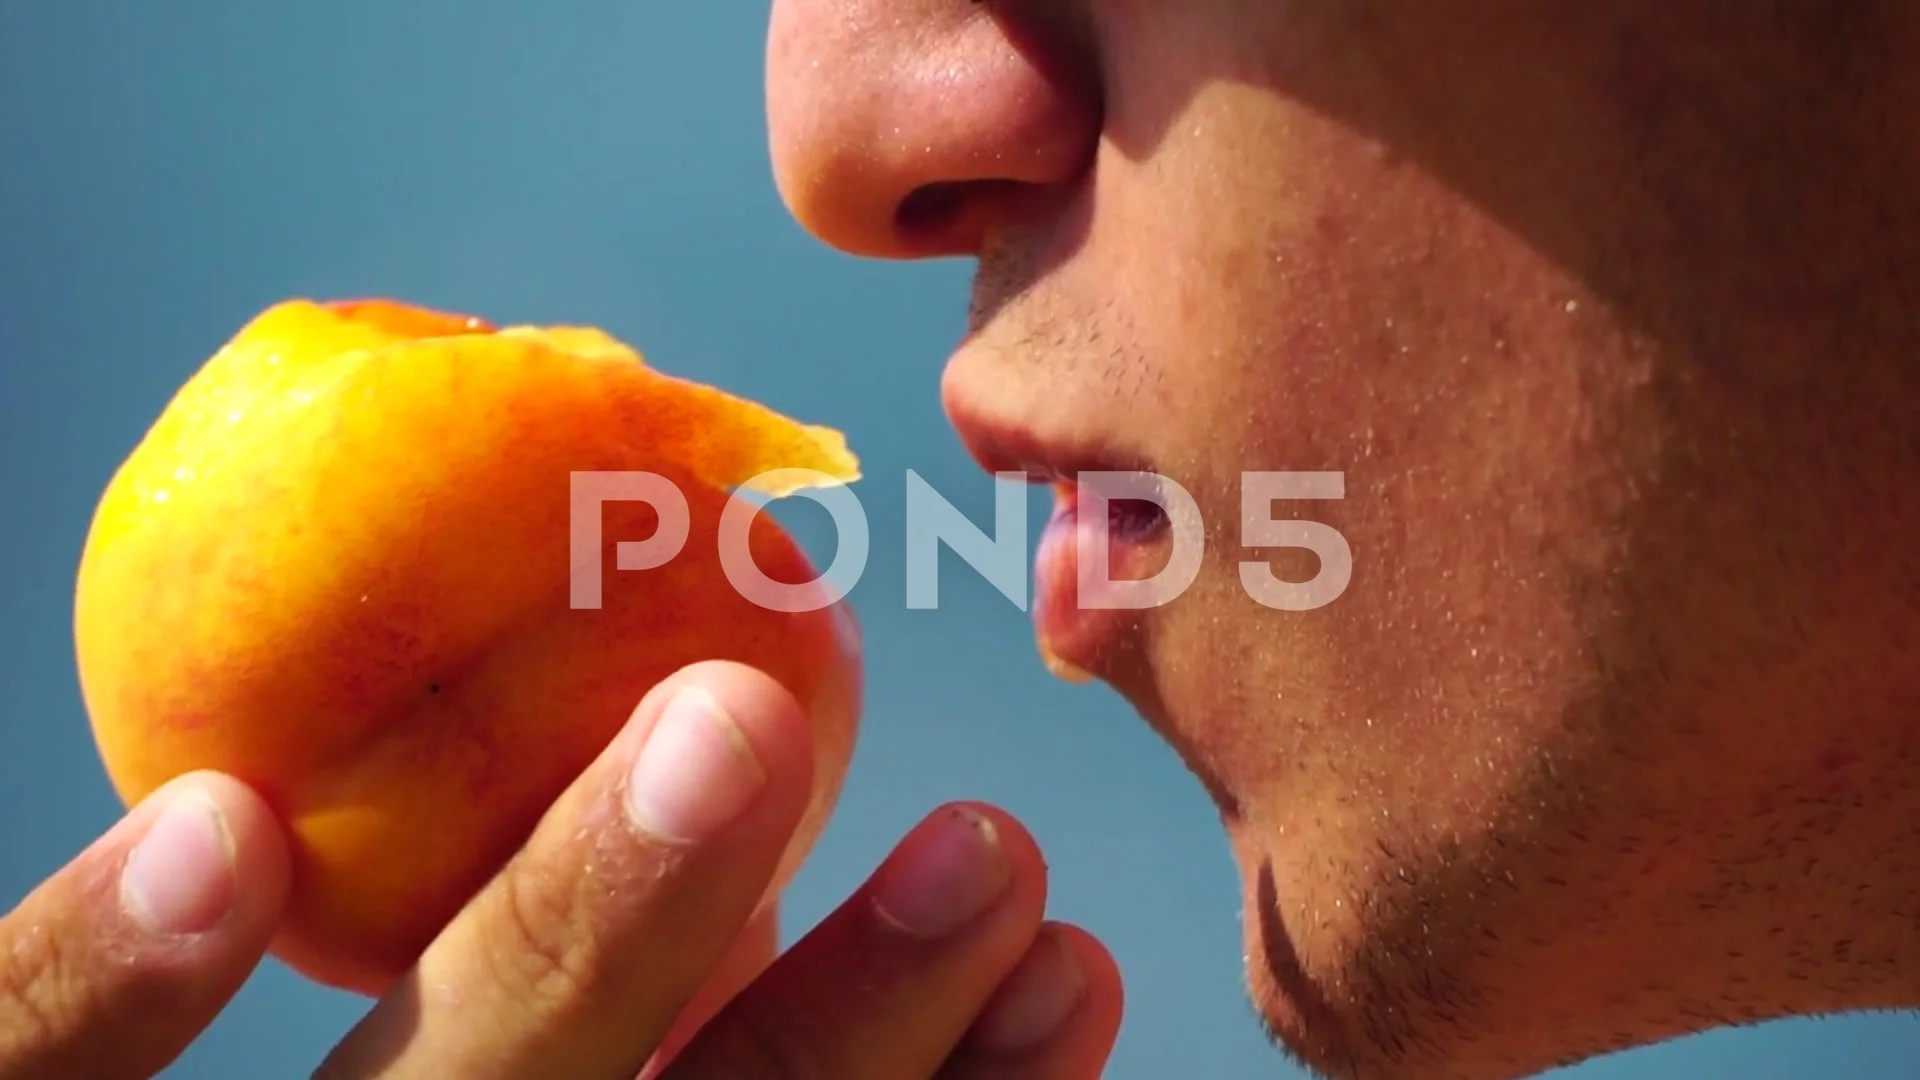 barb monroe add photo man eating a peach